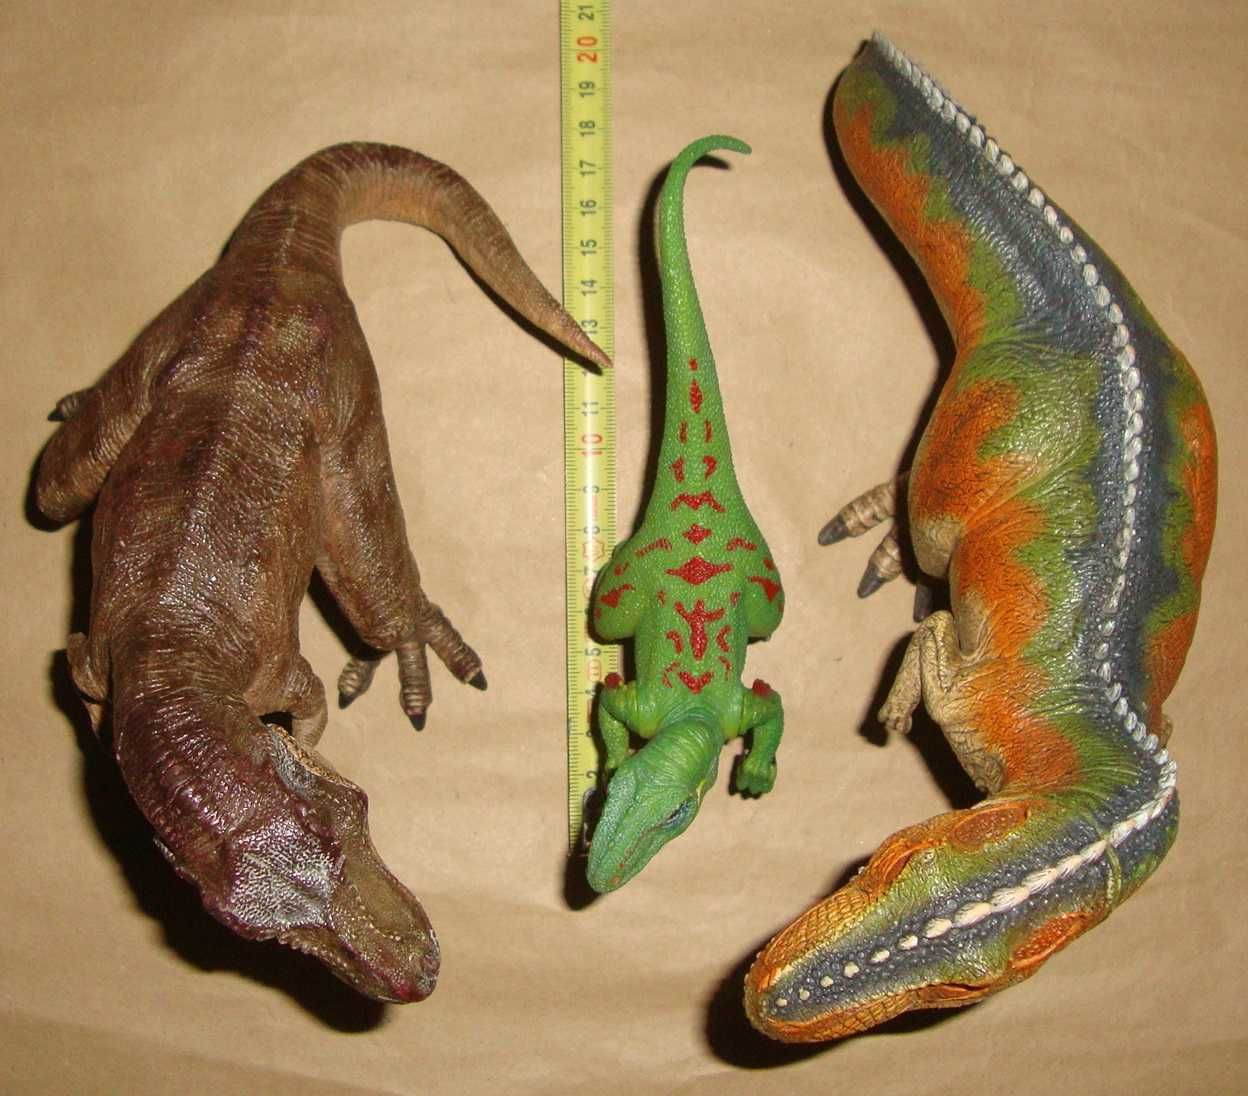 Dinozaur Papo Schleich Gigantosaurus Velocirapitor T-Rex Aligator